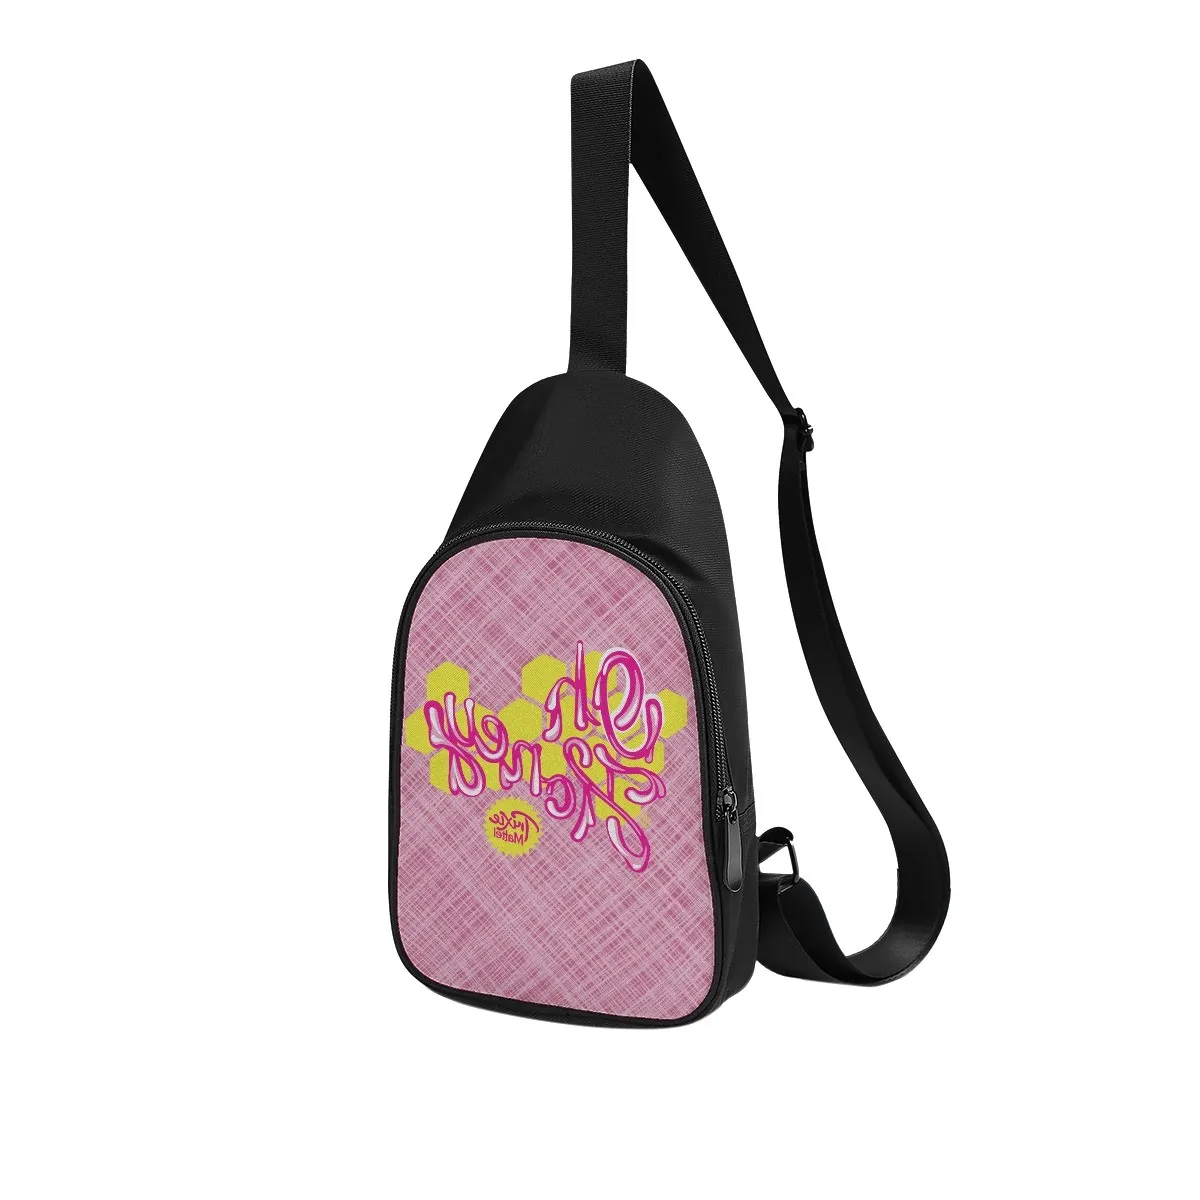 DIY niestandardowe męskie torby na piersi damskie torby na ramię w klatce piersiowej Pink Urocza produkcja spersonalizowanych ekskluzywnych parów prezentów podróżnych 45273